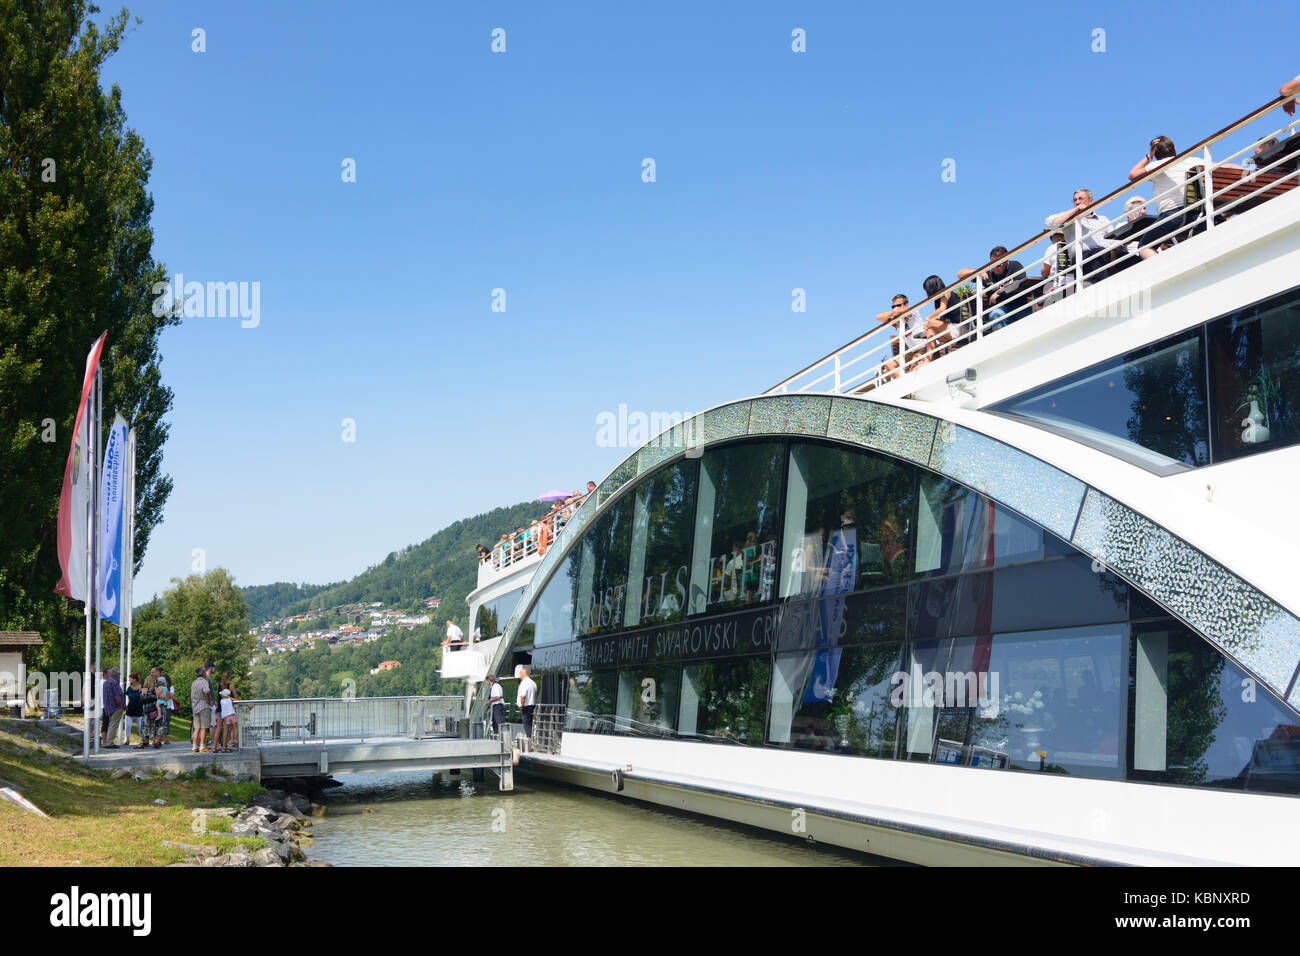 Navire de passagers fait Kristallschiff avec cristaux Swarovski à la jetée à Kasten au Danube, Vichtenstein, Donau, Oberösterreich, Autriche, Autriche Banque D'Images